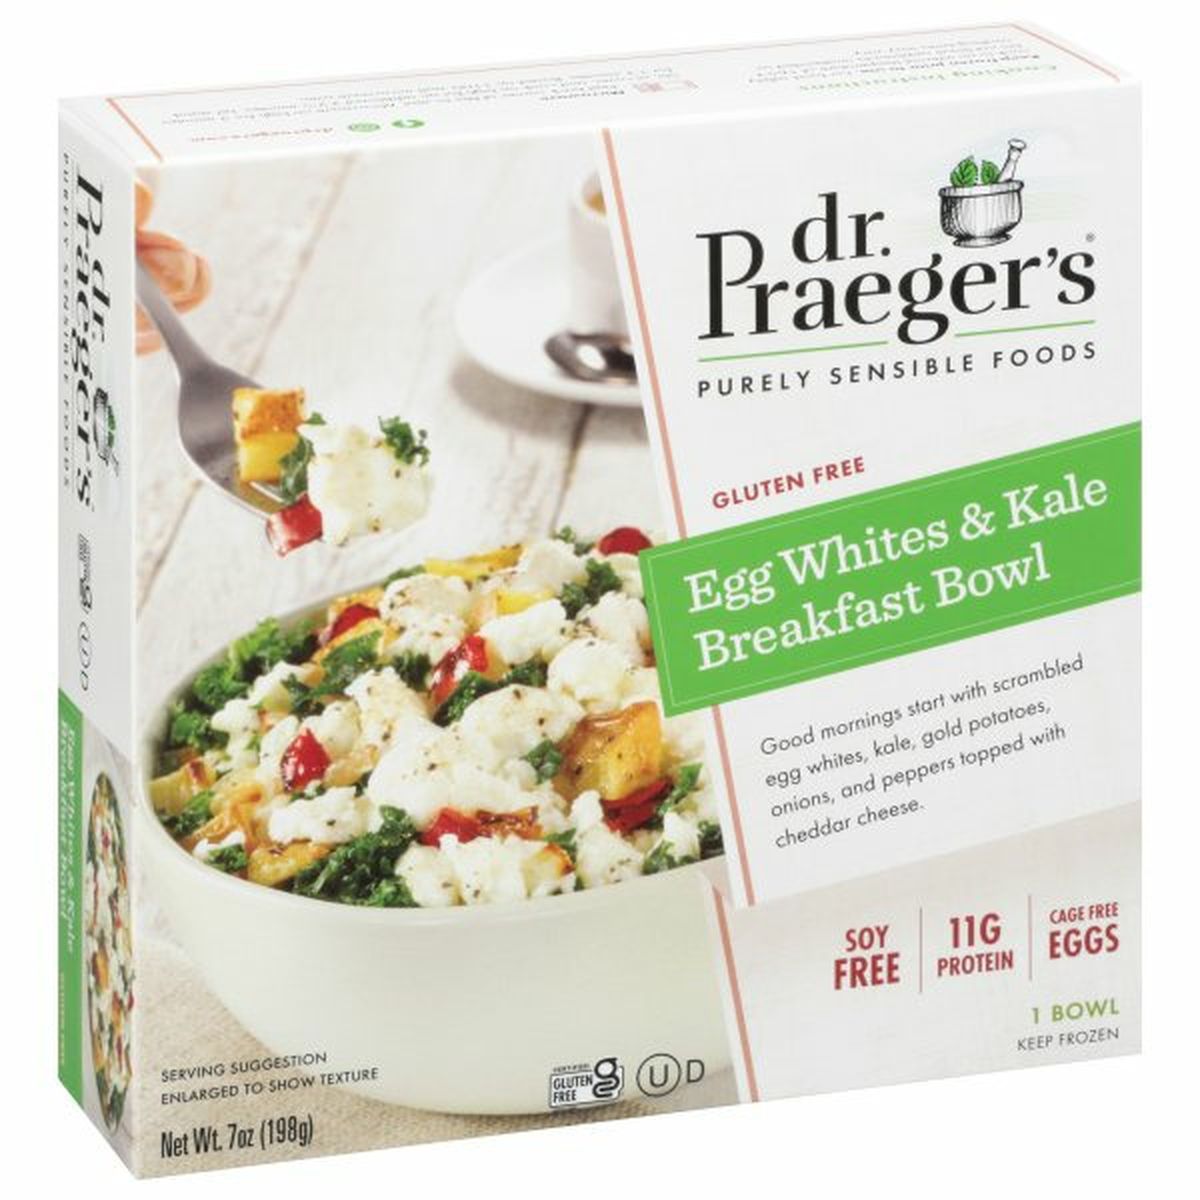 Calories in Dr. Praeger's Breakfast Bowl, Egg Whites & Kale